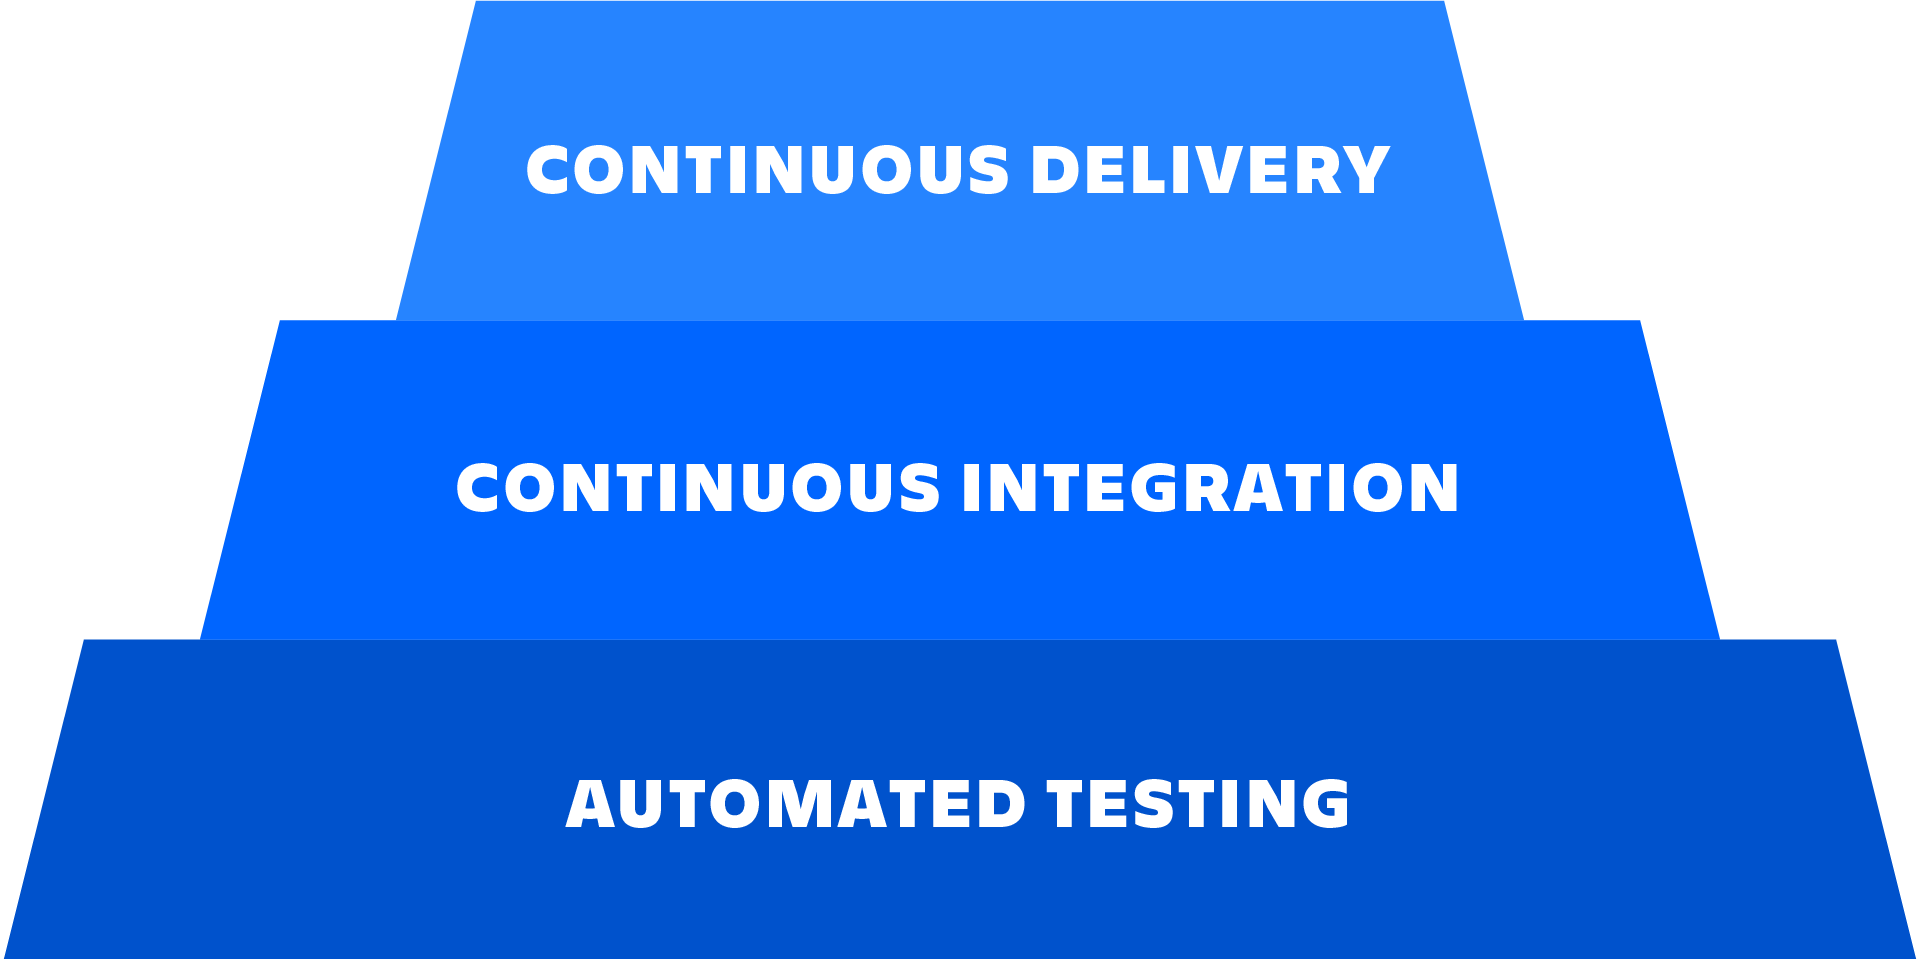 Um diagrama que descreve a relação entre testes automatizados, integração contínua e entrega contínua.